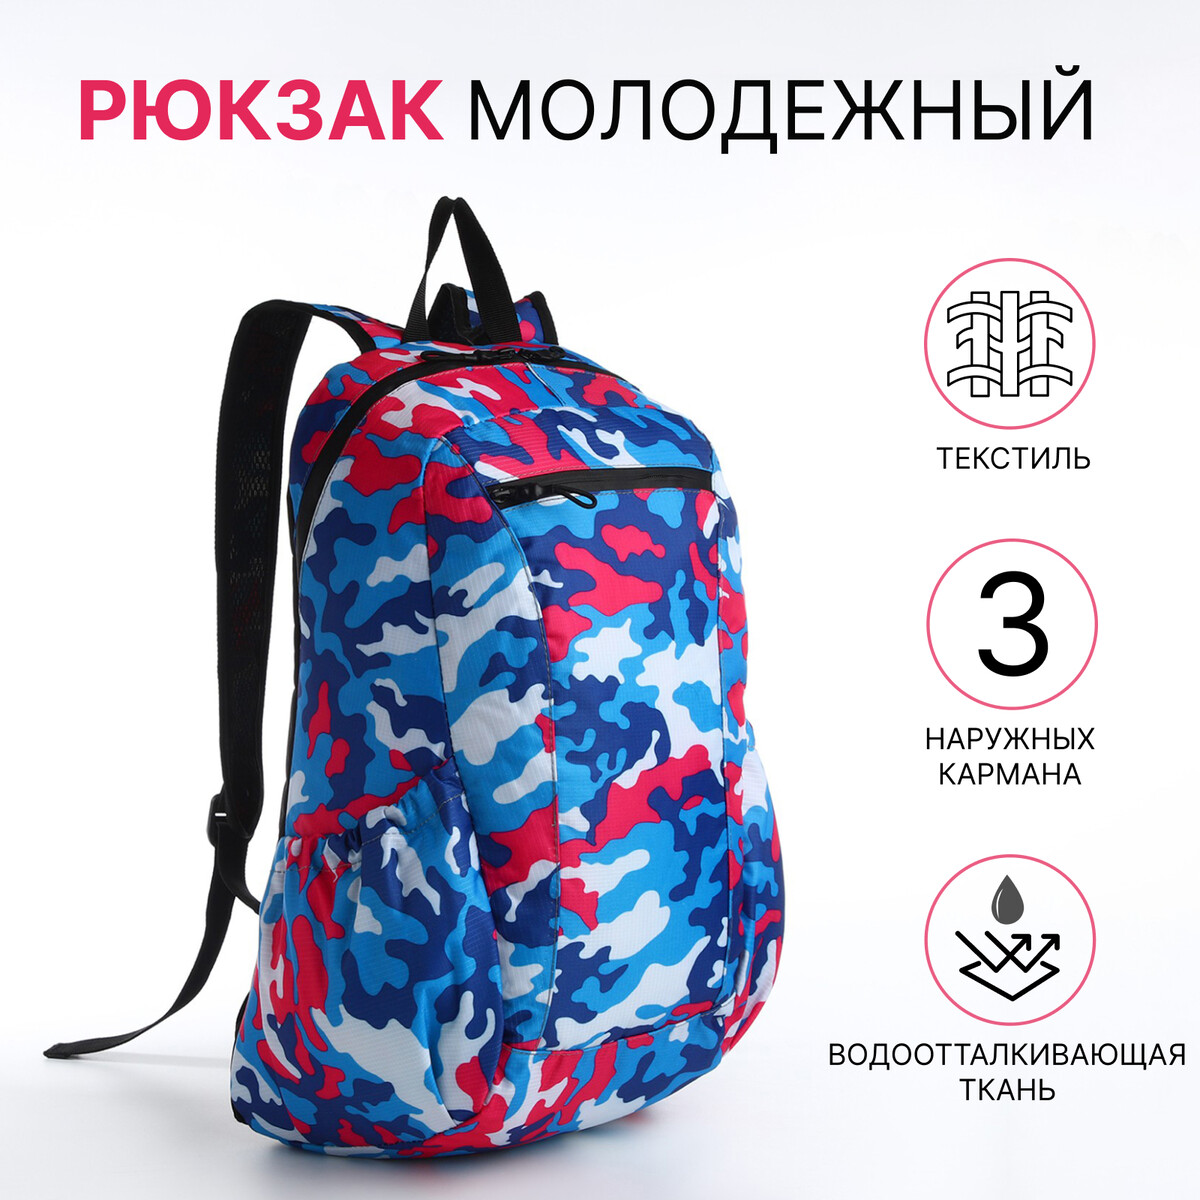 Рюкзак молодежный, водонепроницаемый на молнии, 3 кармана, цвет голубой/розовый рюкзак молодежный из текстиля 2 отдела на молниях 3 кармана розовый